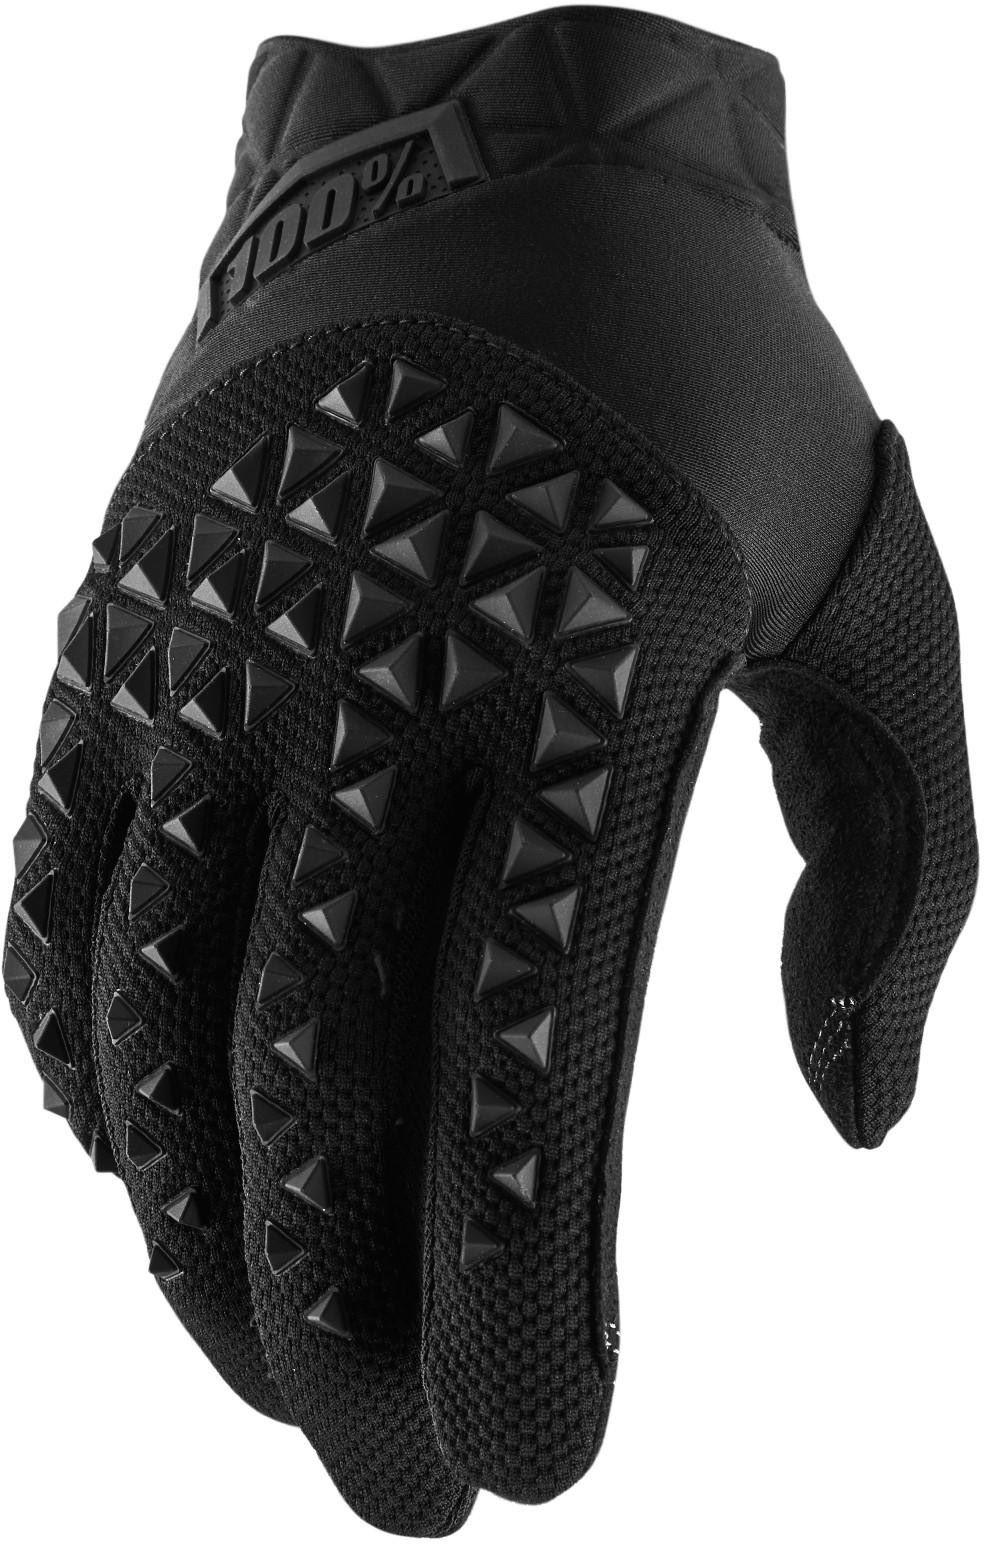 100% Brisker Gloves - L Black/grey  Gloves